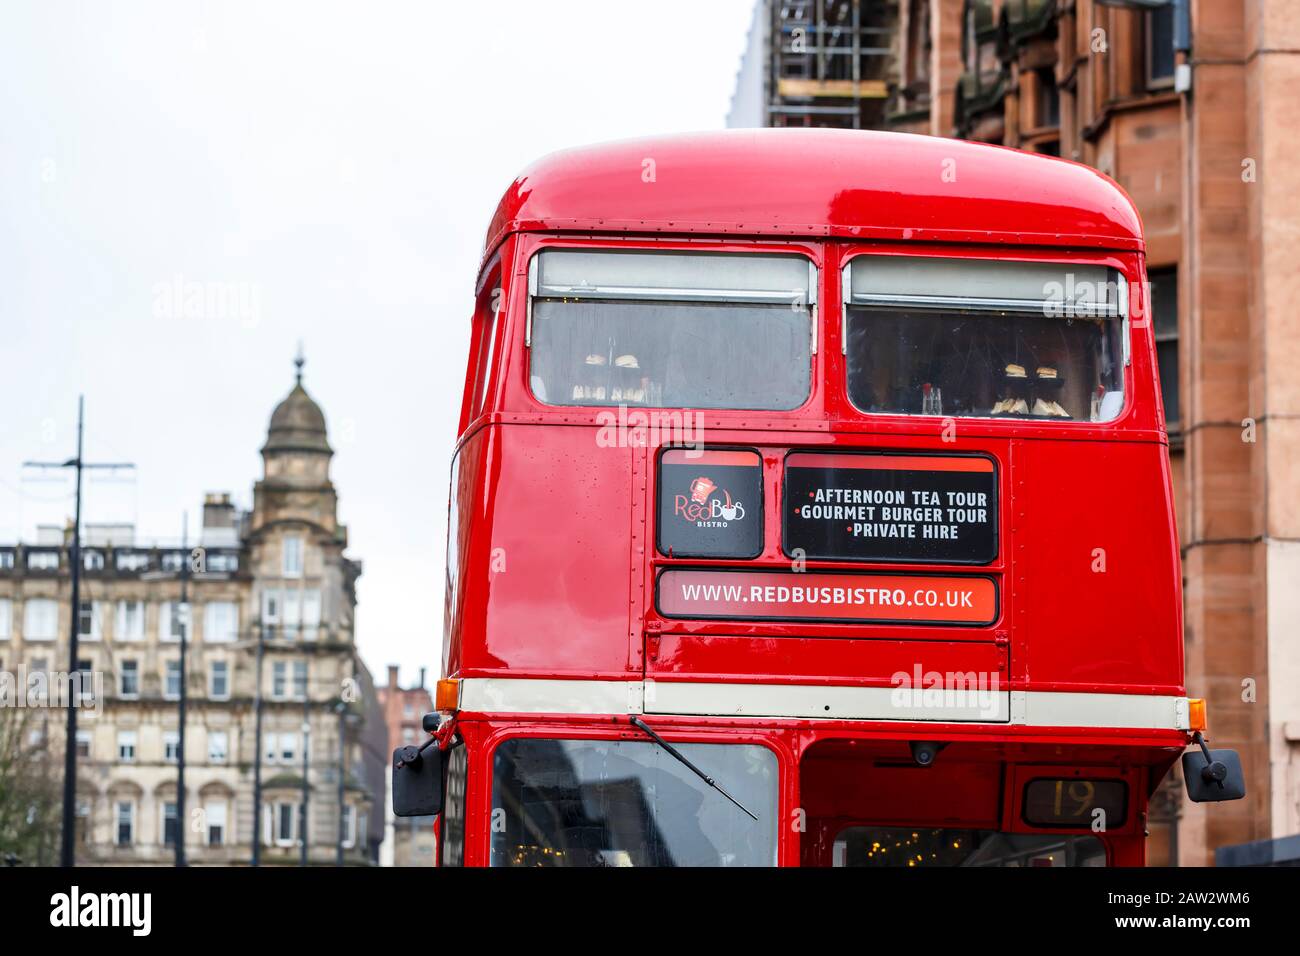 Détail de l'avant du Red bus Bistro dans le centre-ville de Glasgow, Ecosse, Royaume-Uni Banque D'Images